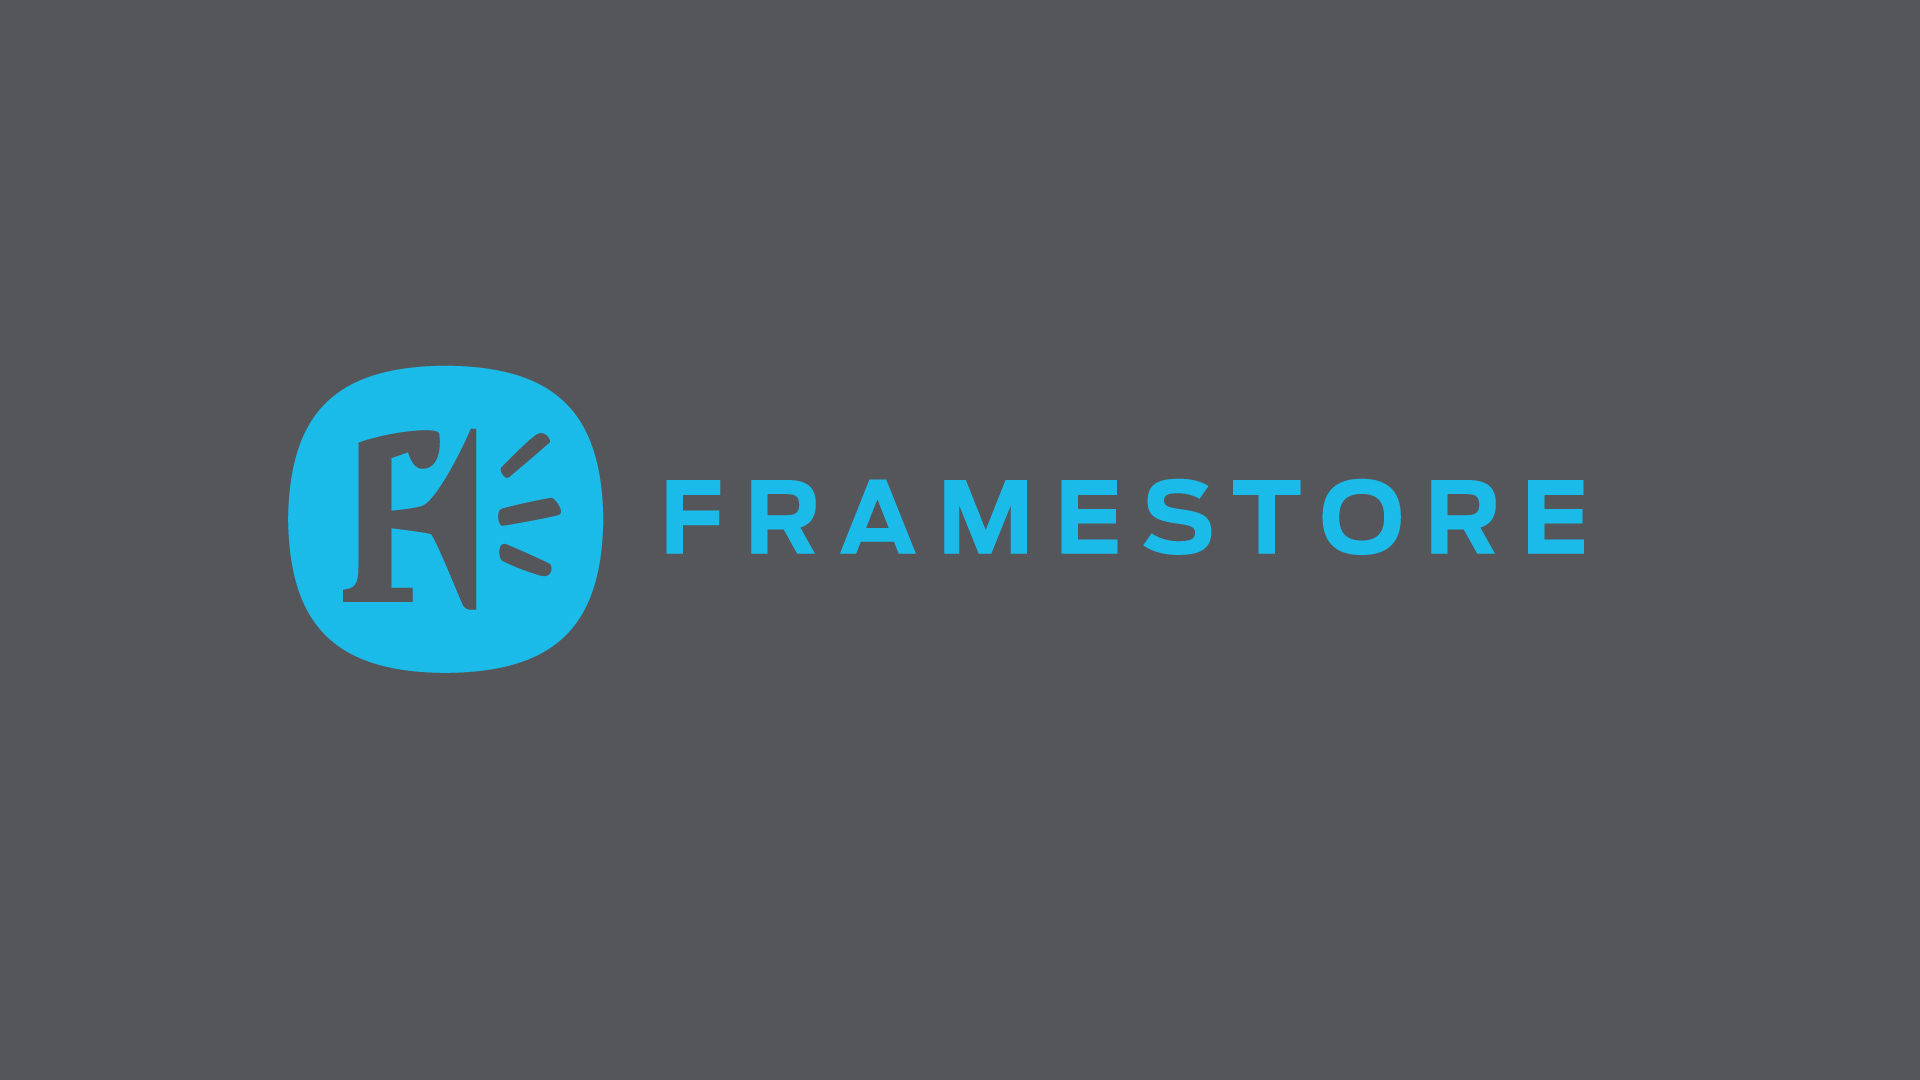 Our logo evolution for Framestore